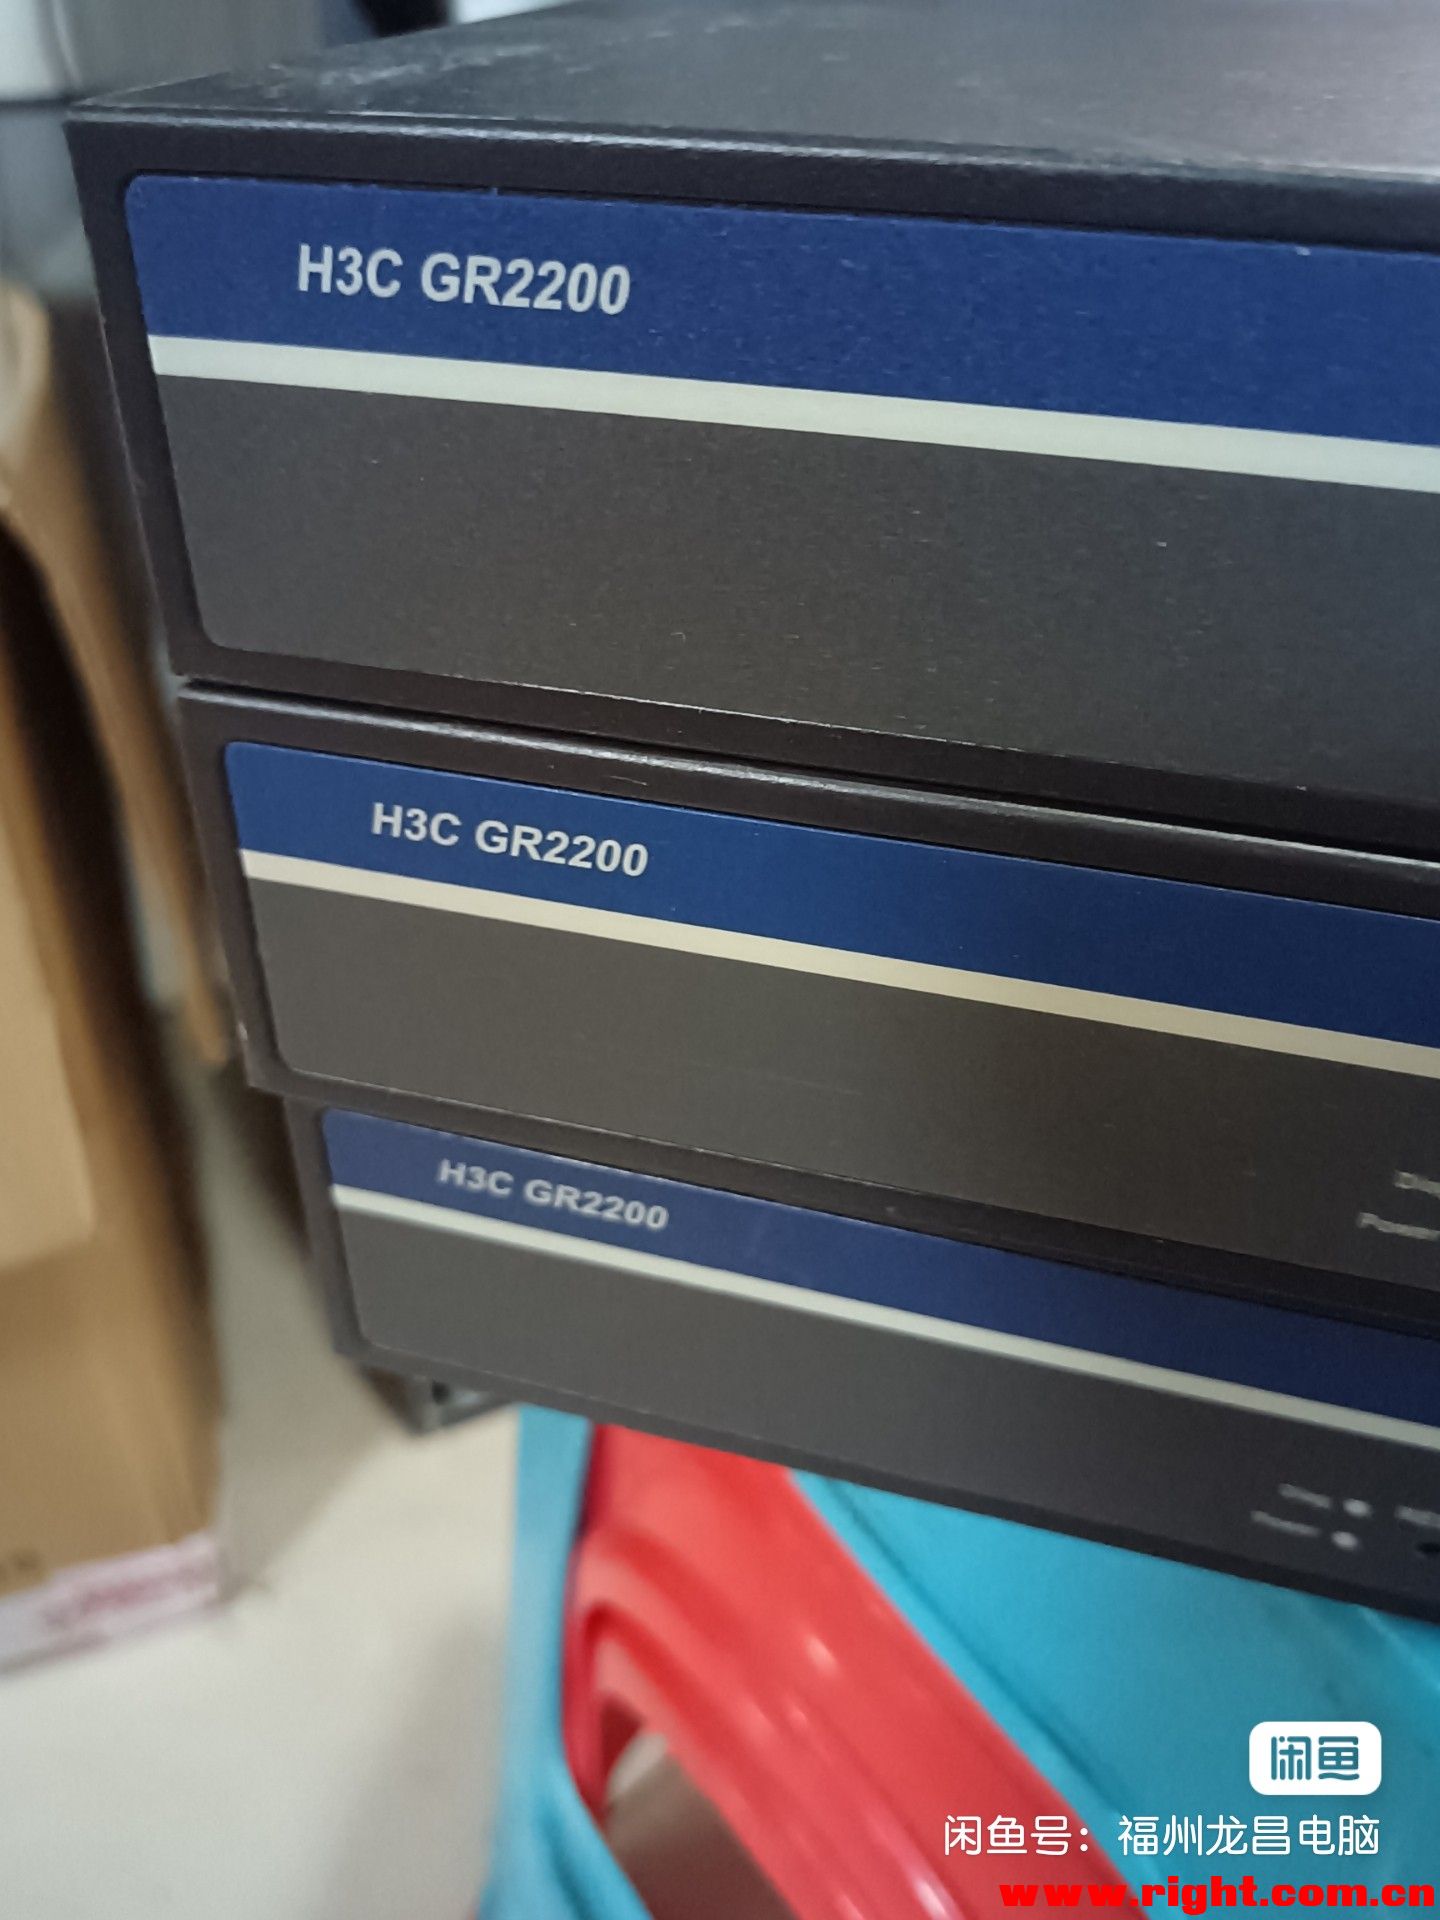 H3C GR2200